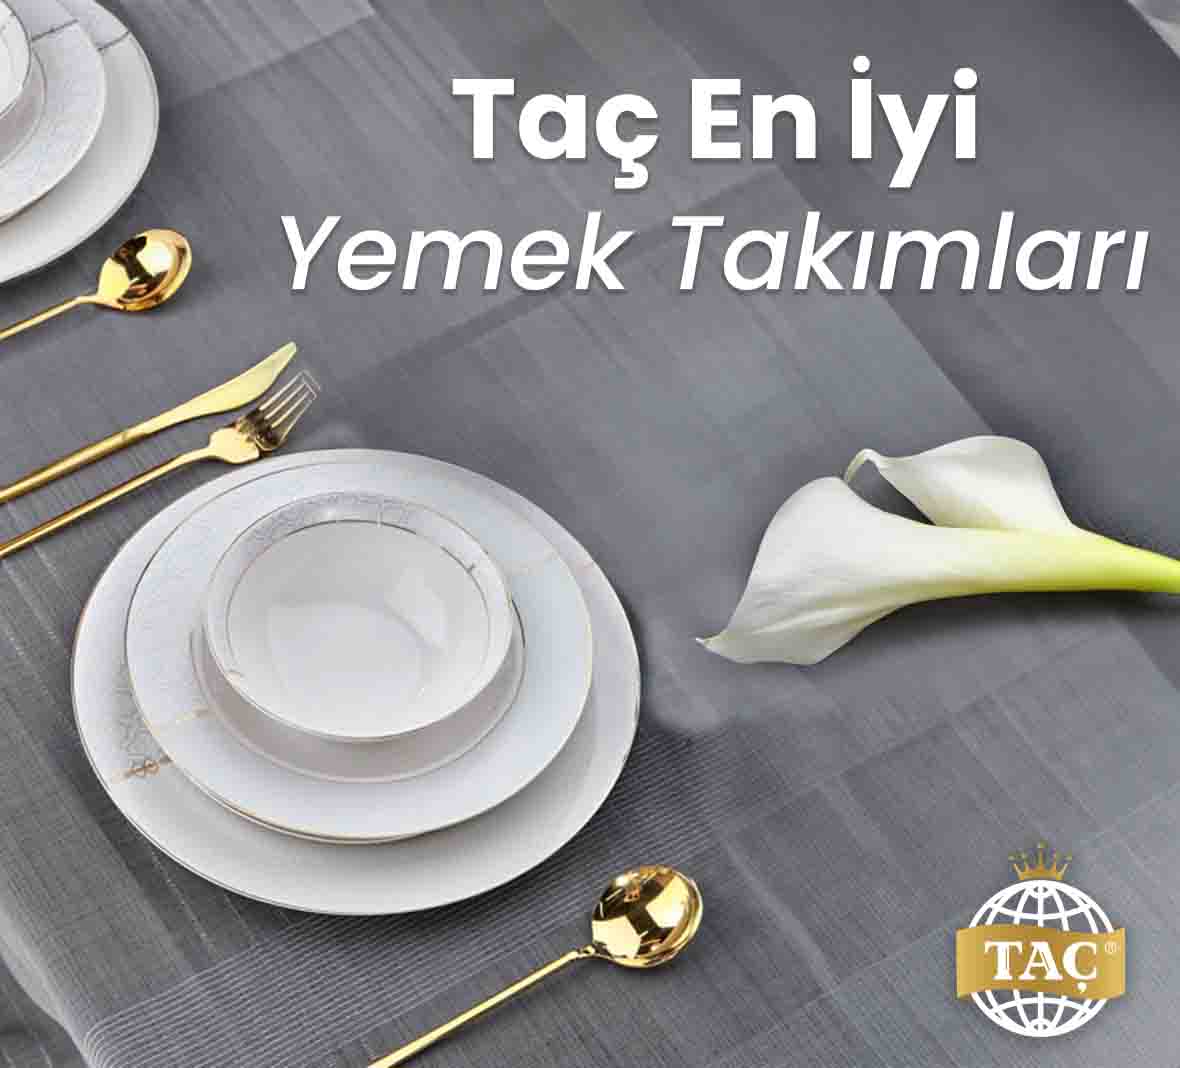 Taç En İyi Yemek Takımları - Tacev.com